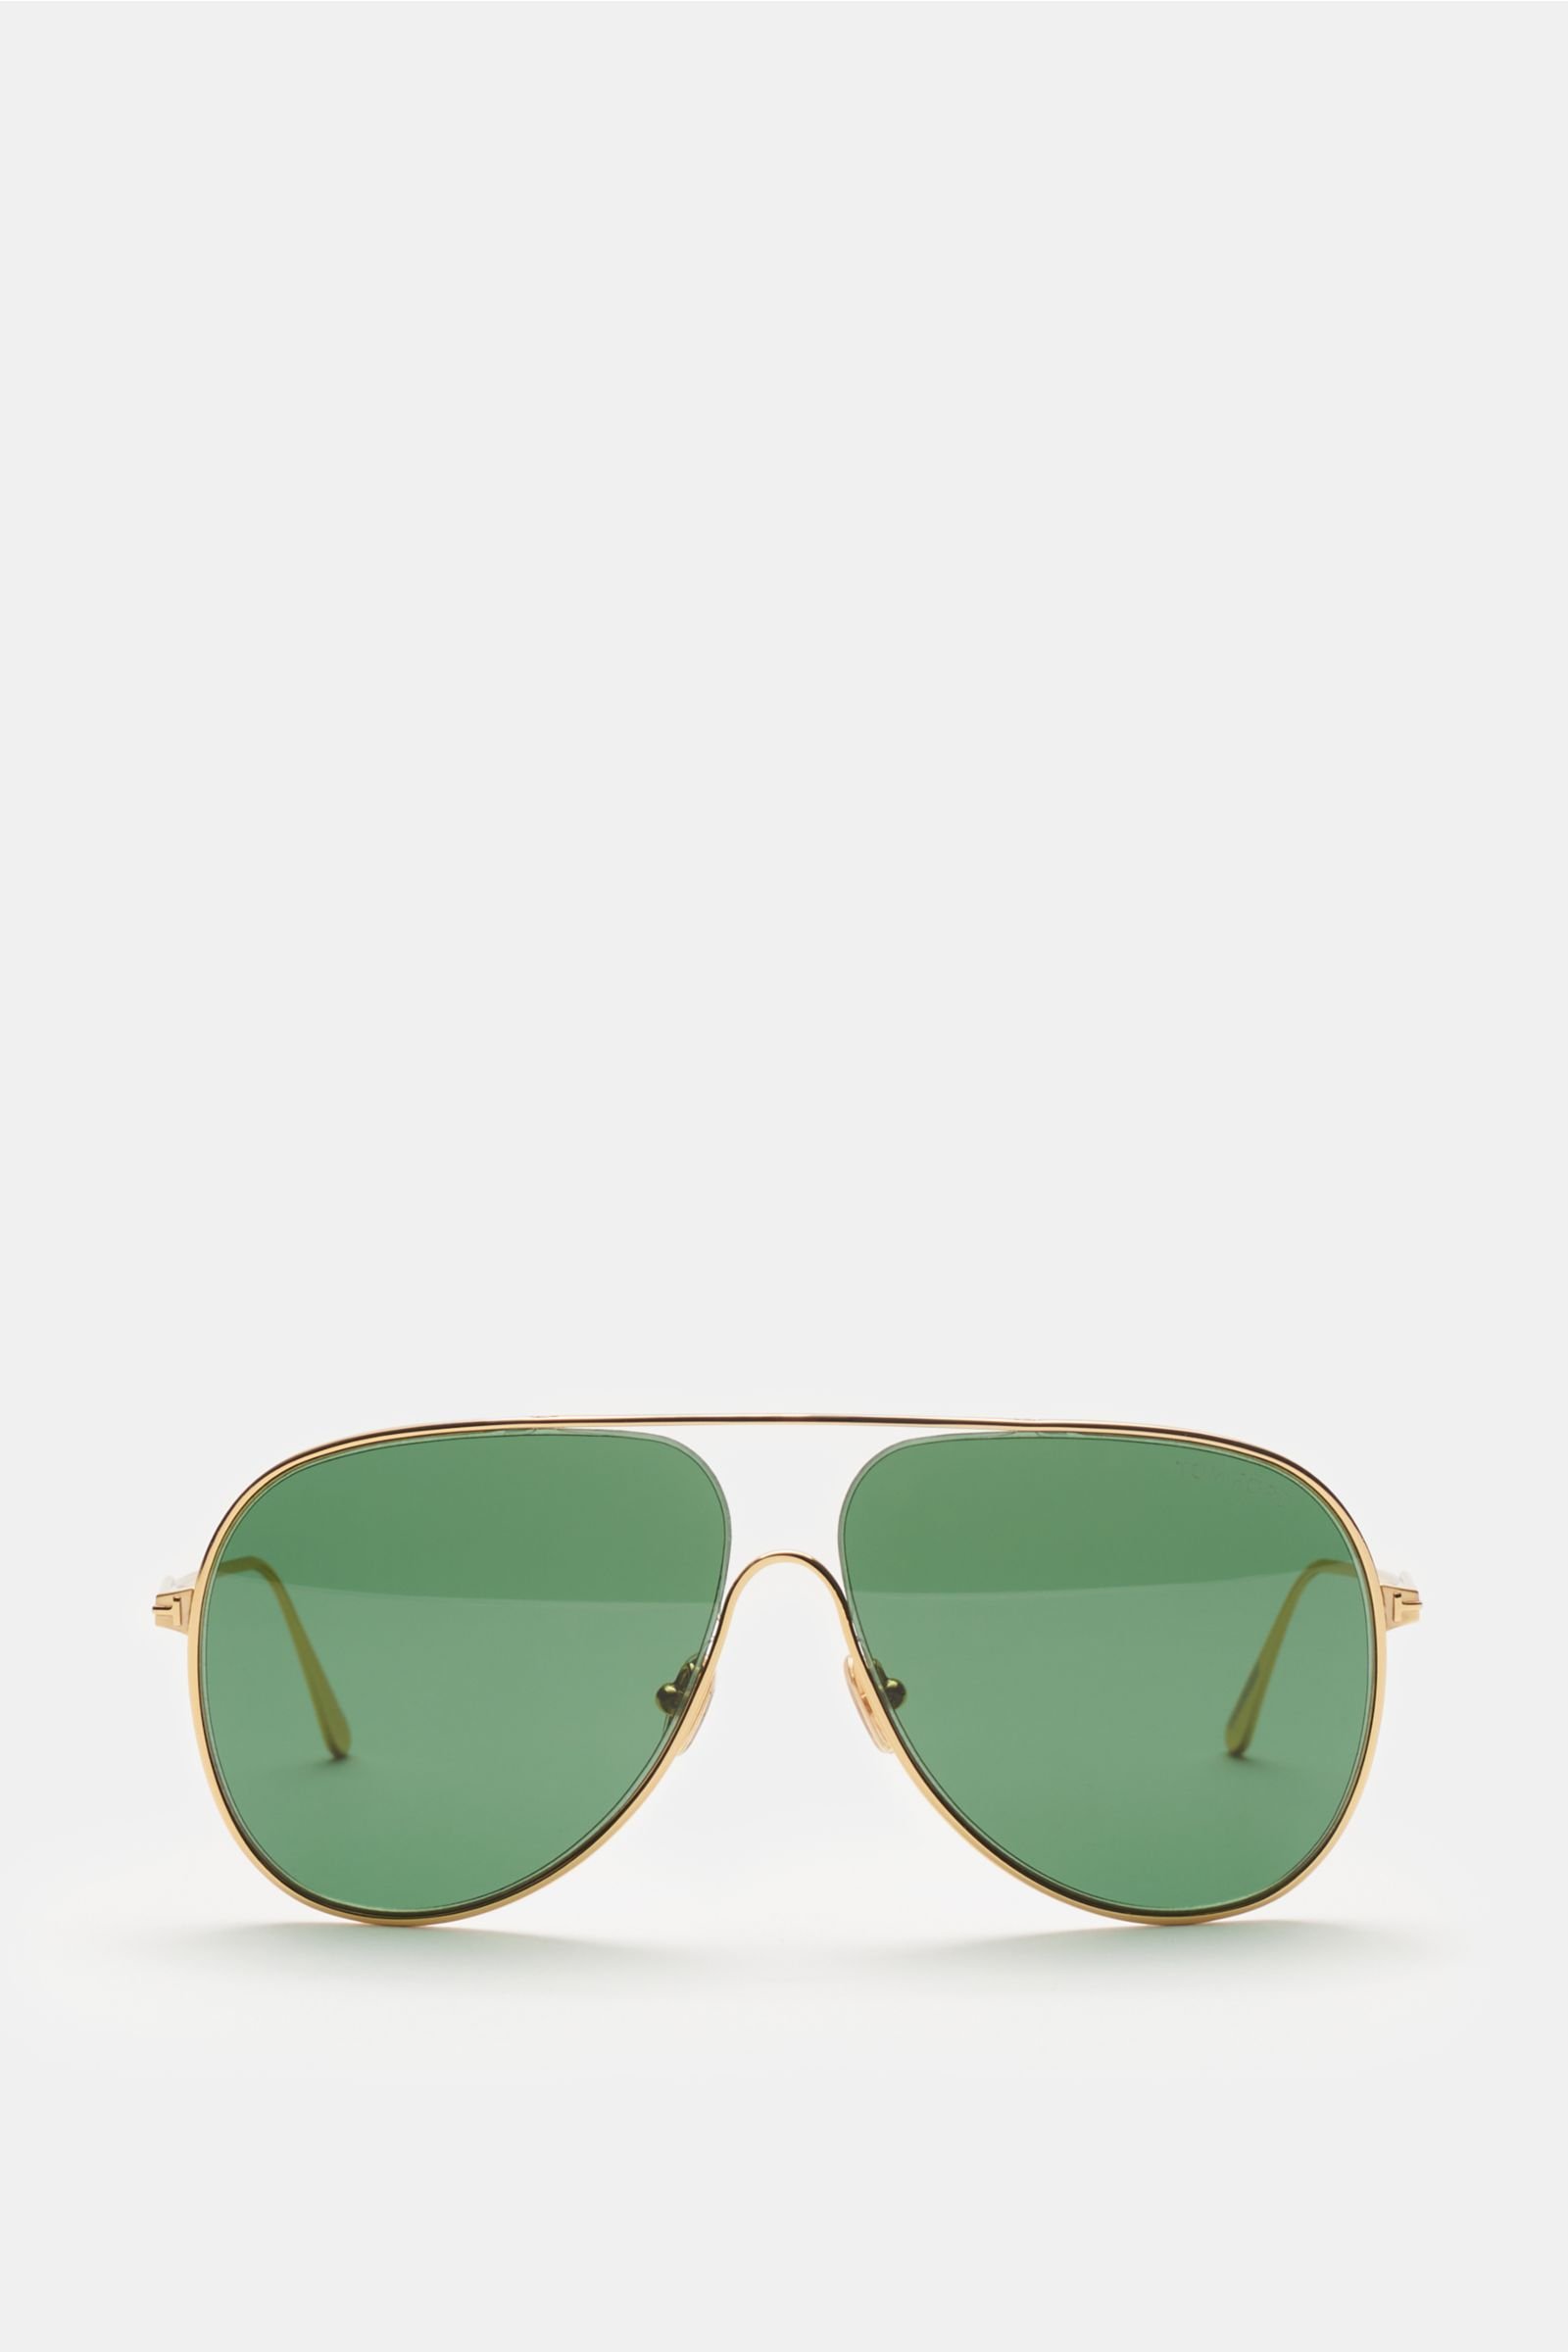 Sunglasses 'Alec' gold/green